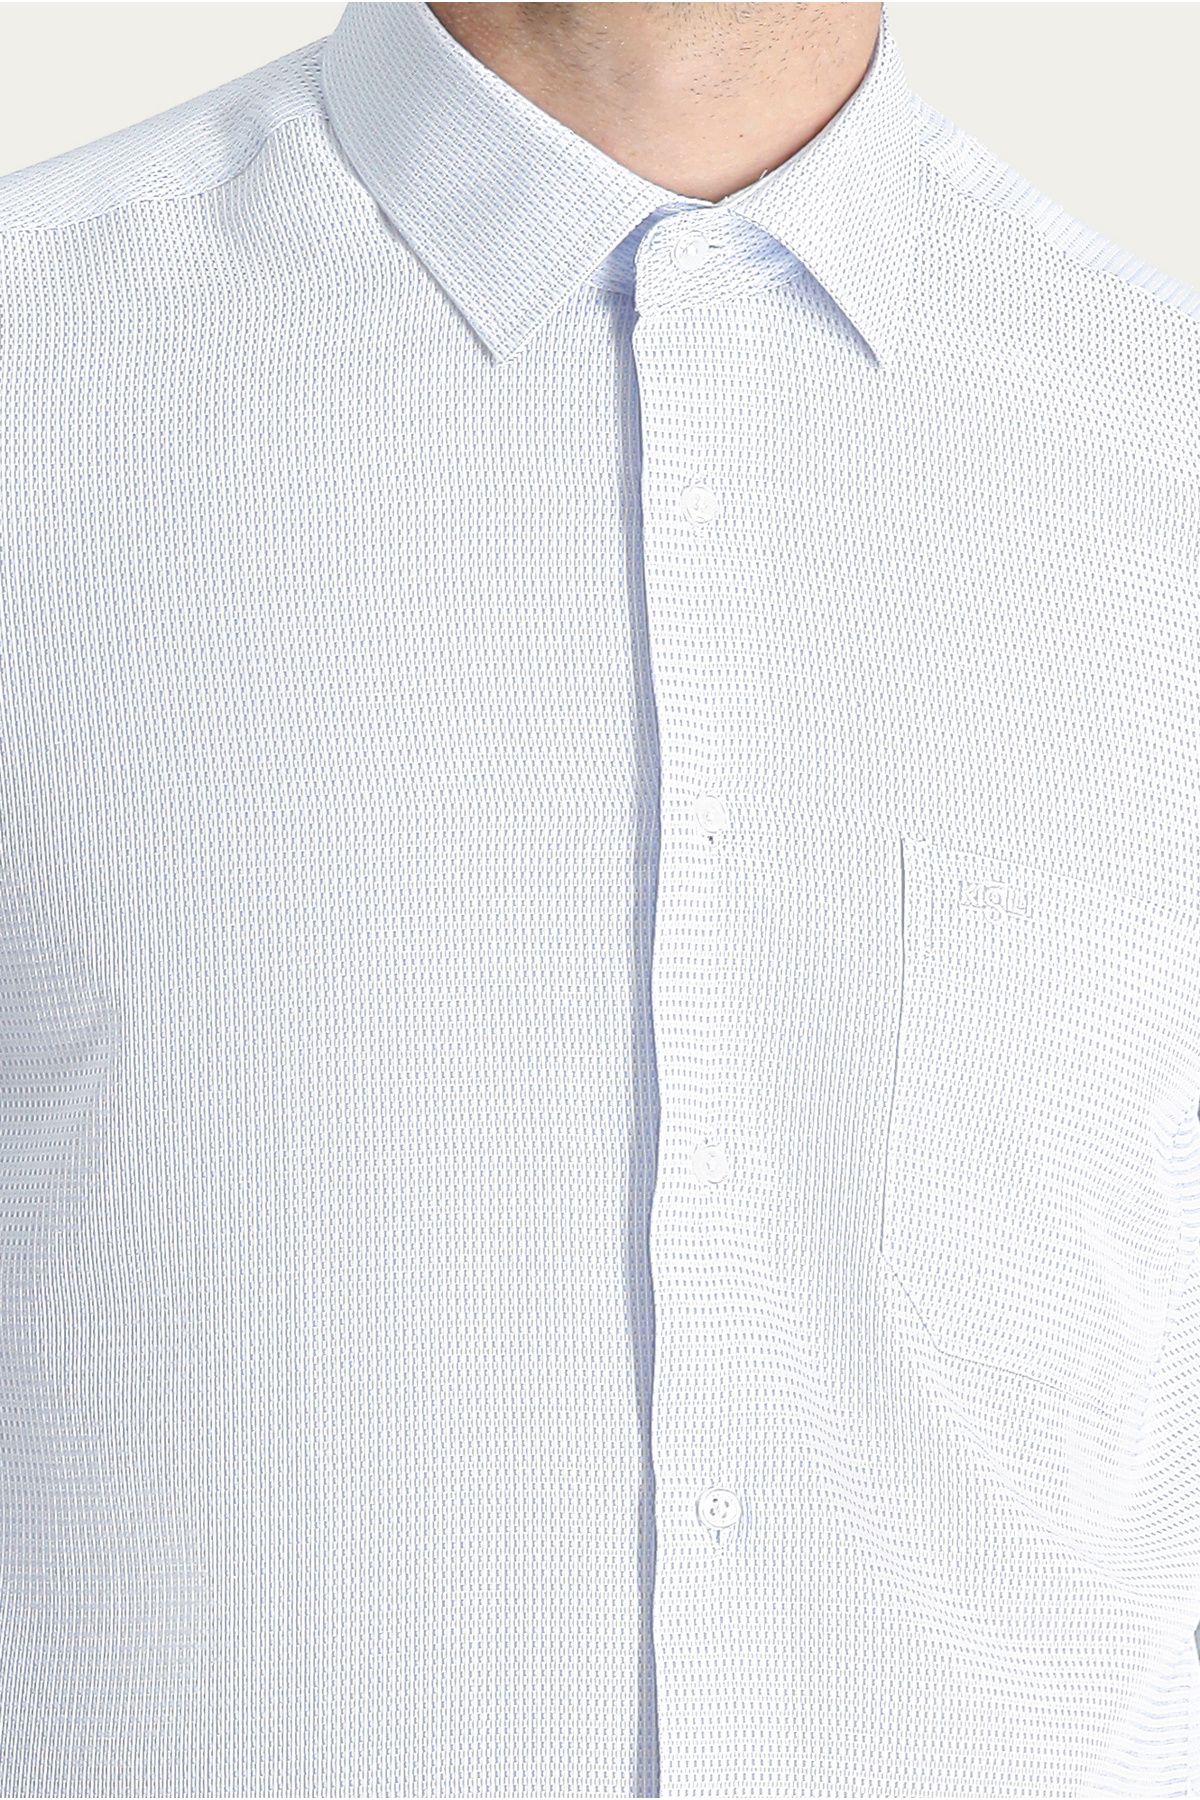 Kiğılı پیراهن پنبه کلاسیک با بازوی بلند الگوی